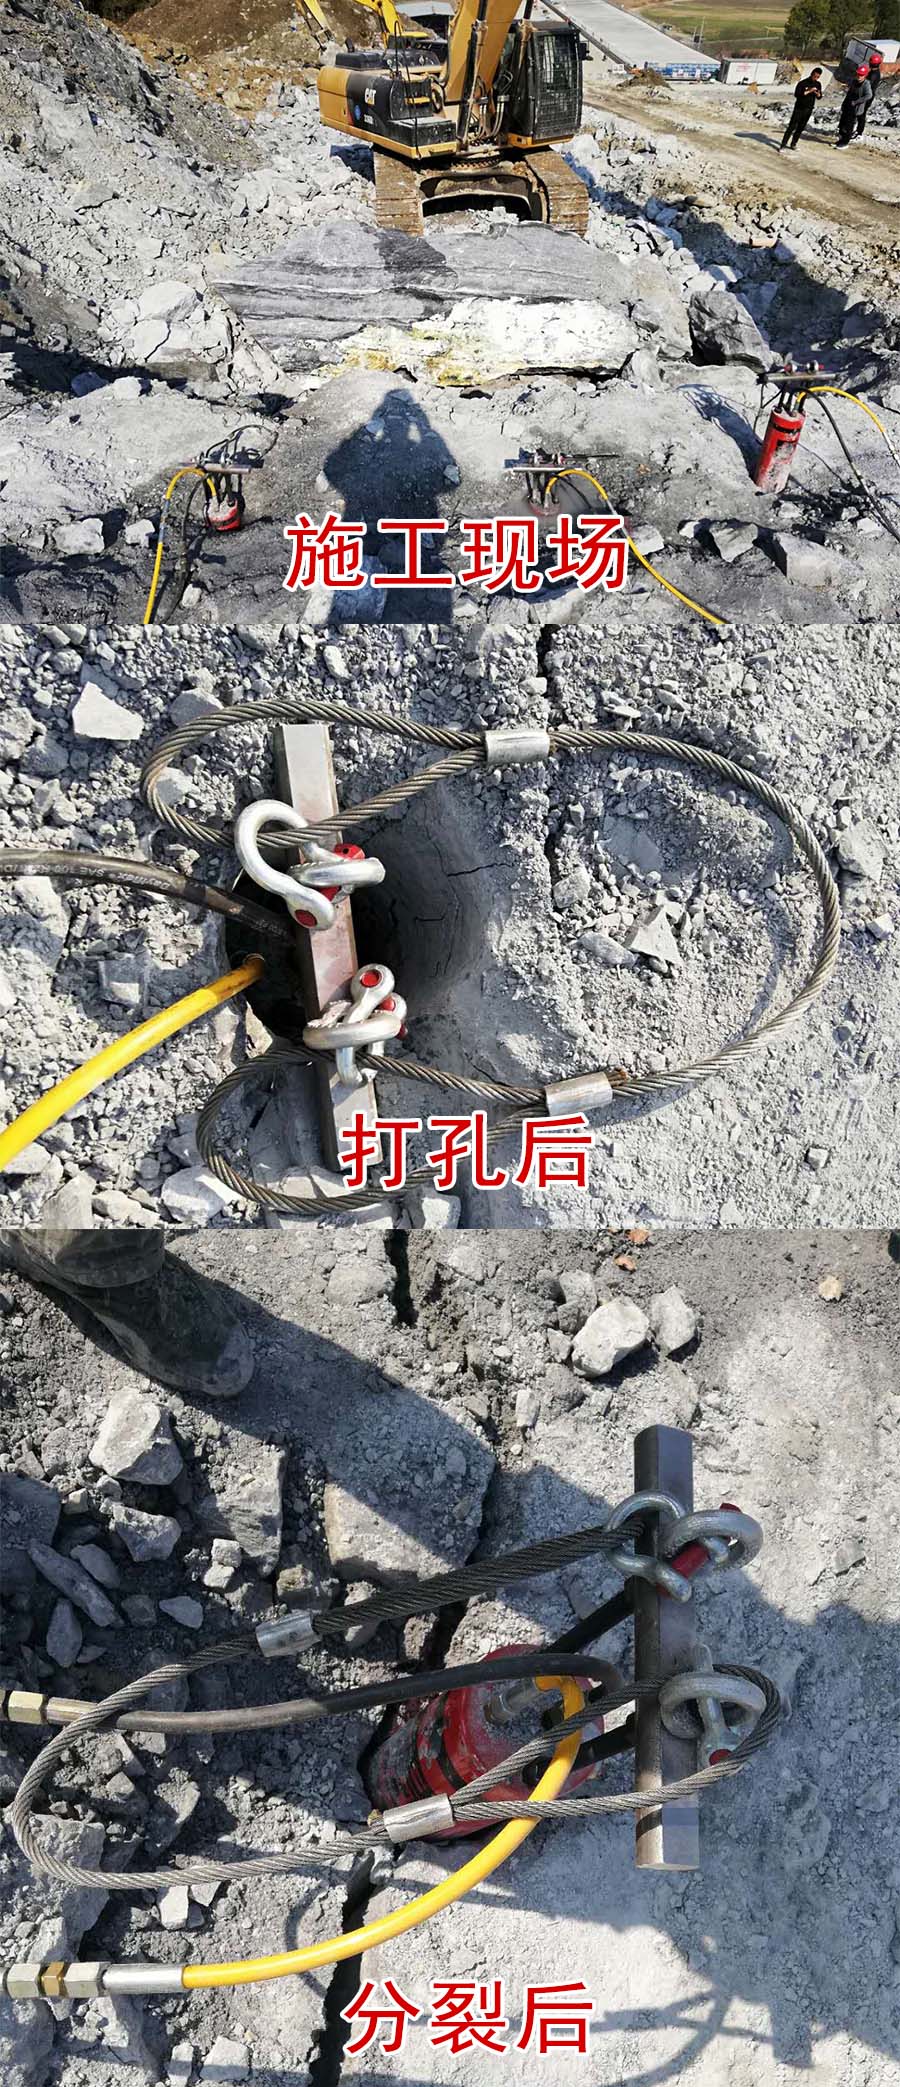 江苏维扬区-撑裂机矿洞开采机器